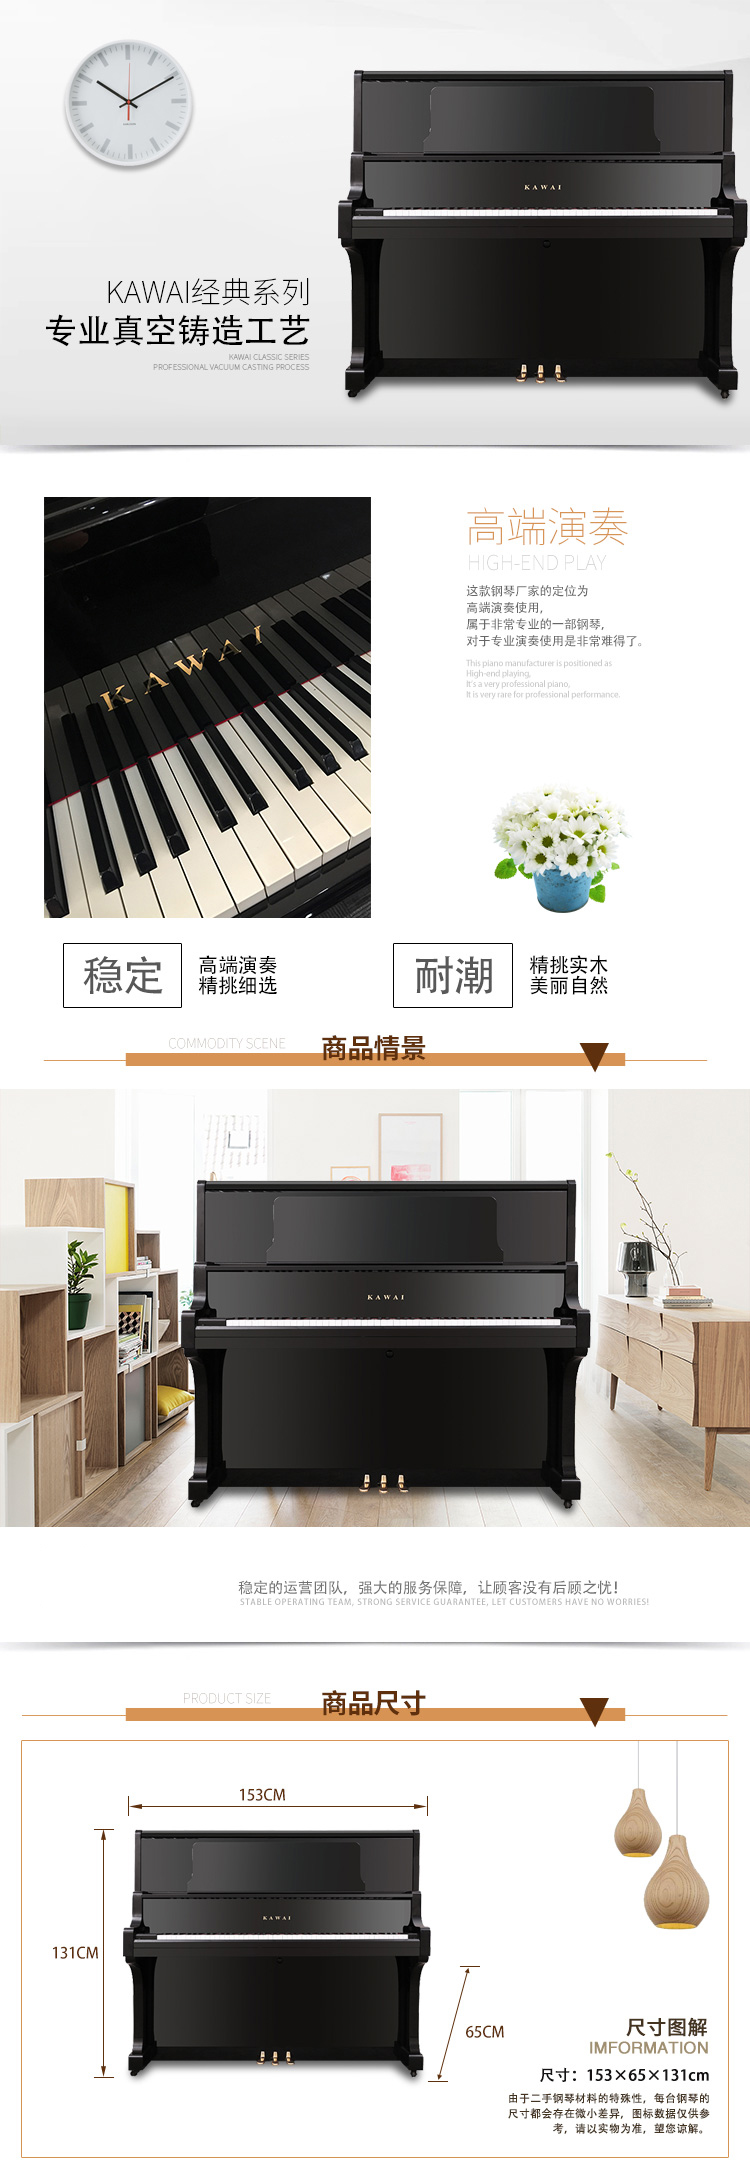 日本原装进口卡瓦依钢琴 KAWAI K-80(图2)